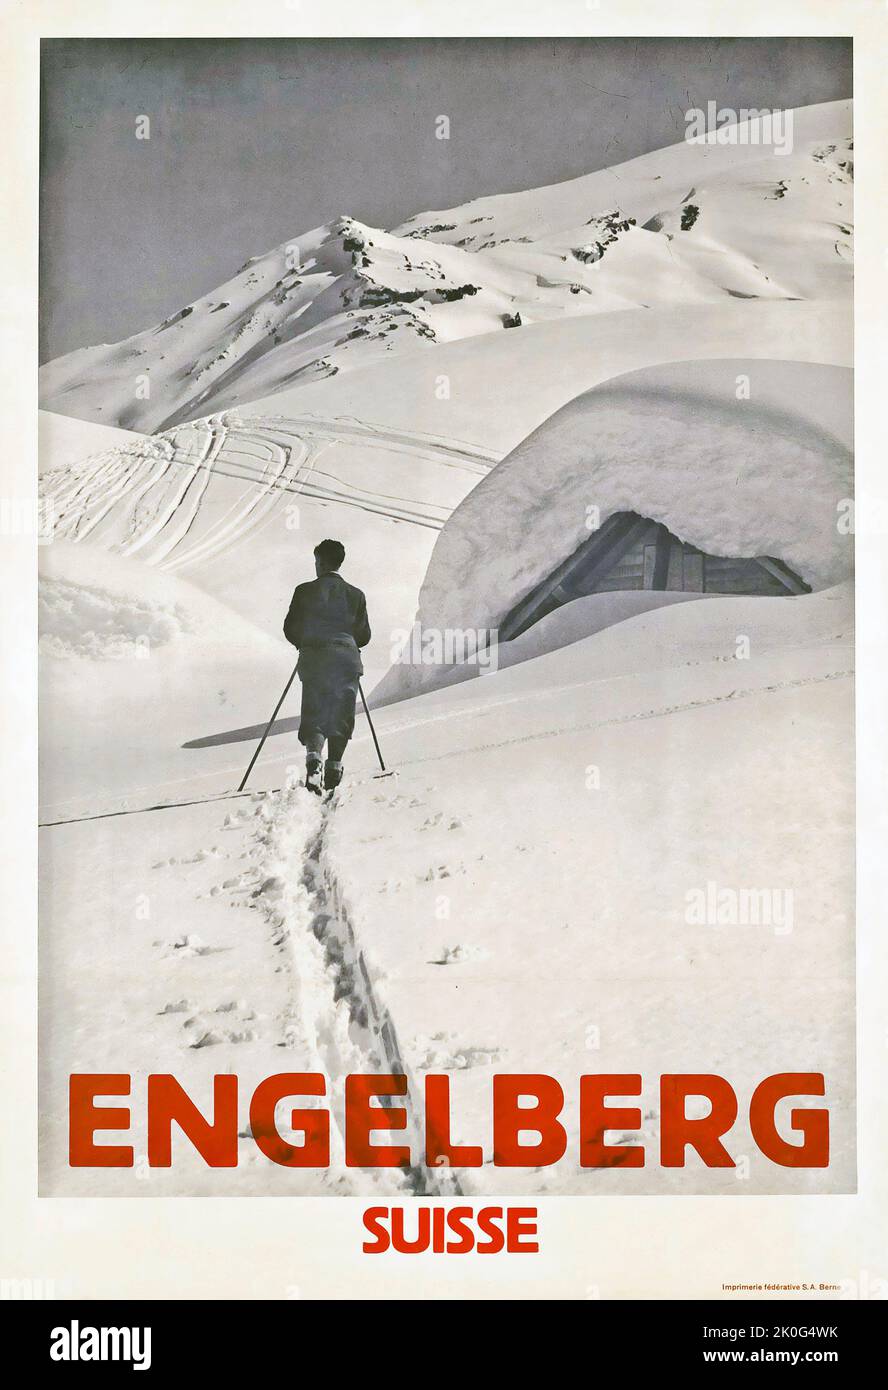 Artiste anonyme - ENGELBERG - Schweiz, Suisse, Suisse - affiche de voyage 1934 Banque D'Images